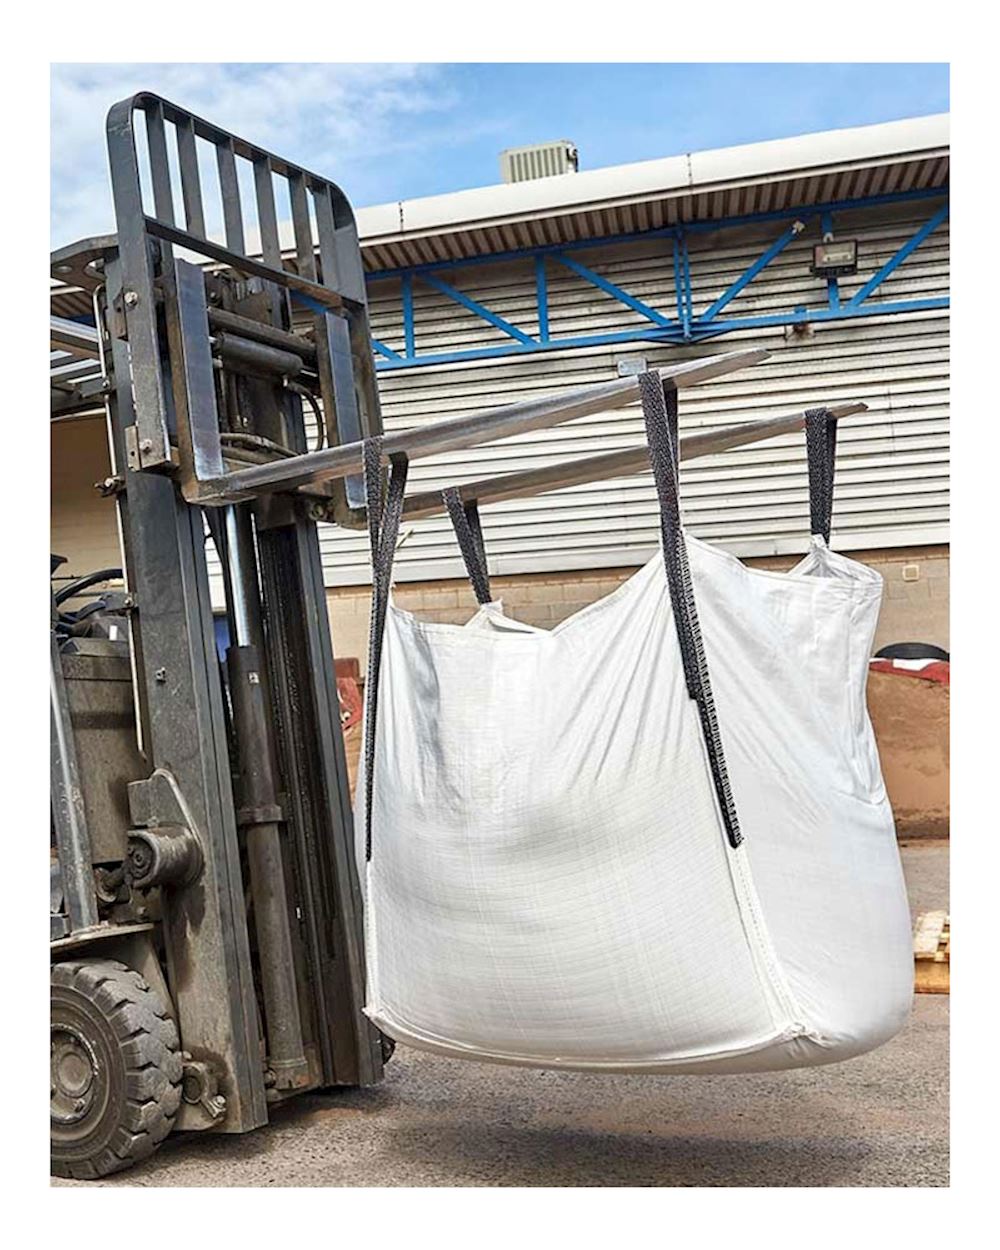 Amazon.com: deebree 66 Gallon FIBC Bulk Bag 3 Pack, 1 Ton Bag, 24